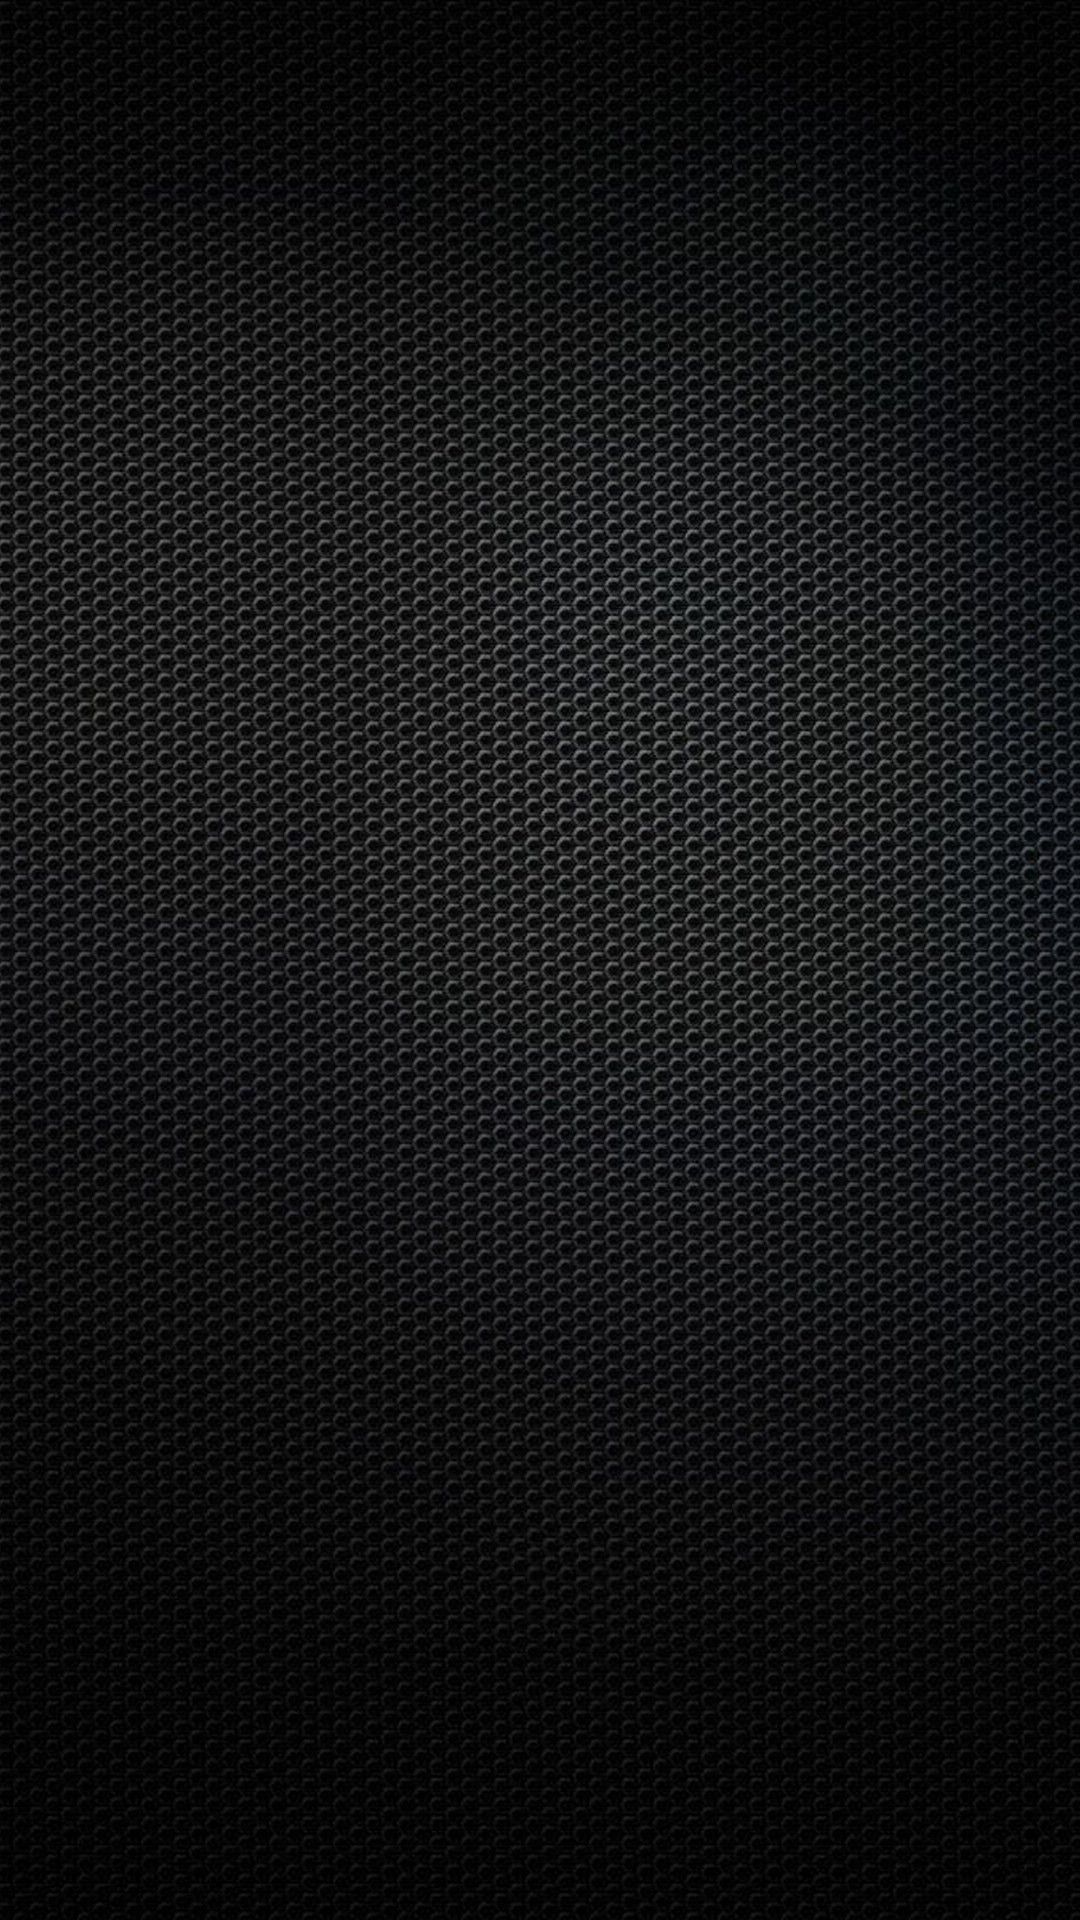 Dark Iphone 5 Wallpapers